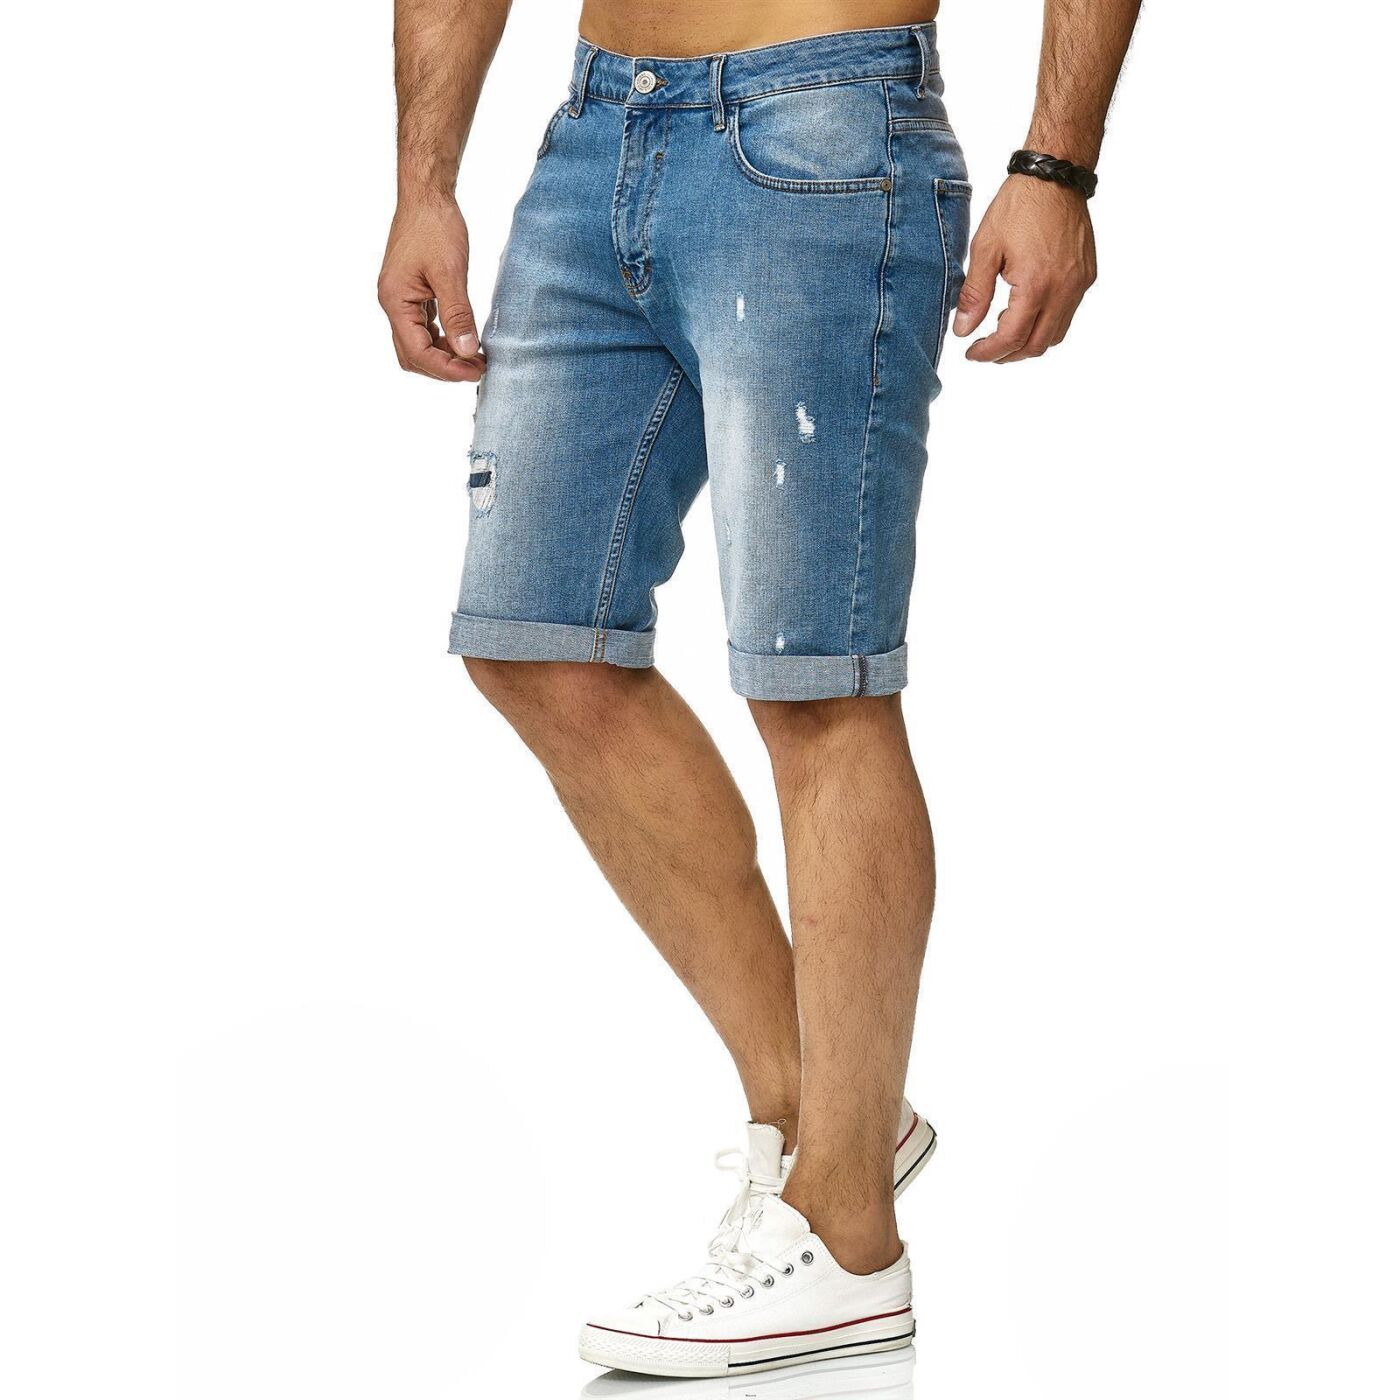 Basi, Jeans Bridge Kurze € Denim Distressed Hose Shorts Red 29,90 Capri Herren